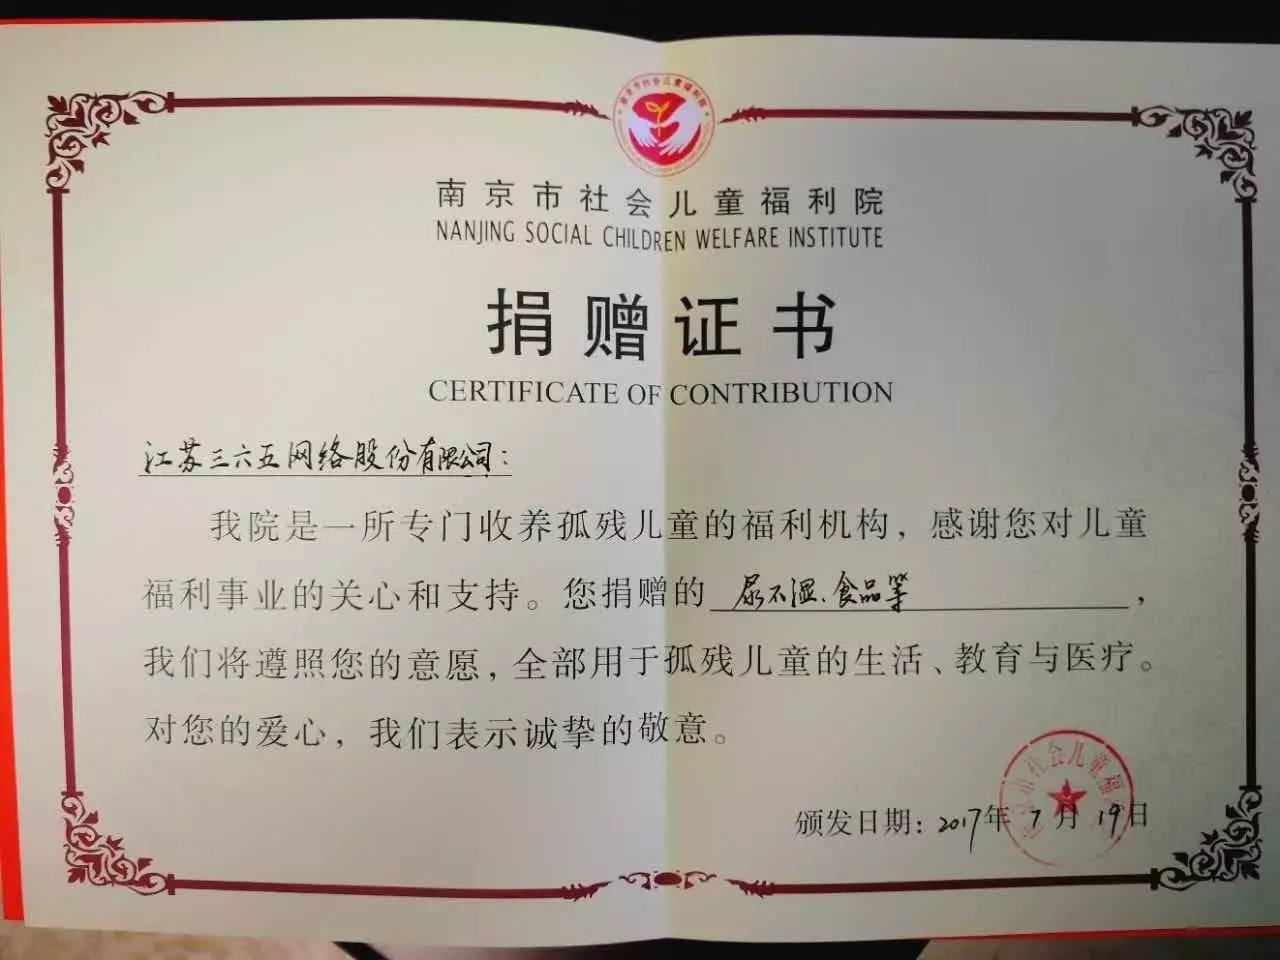 一份担当:南京儿童福利院,200多位阿姨的坚持!